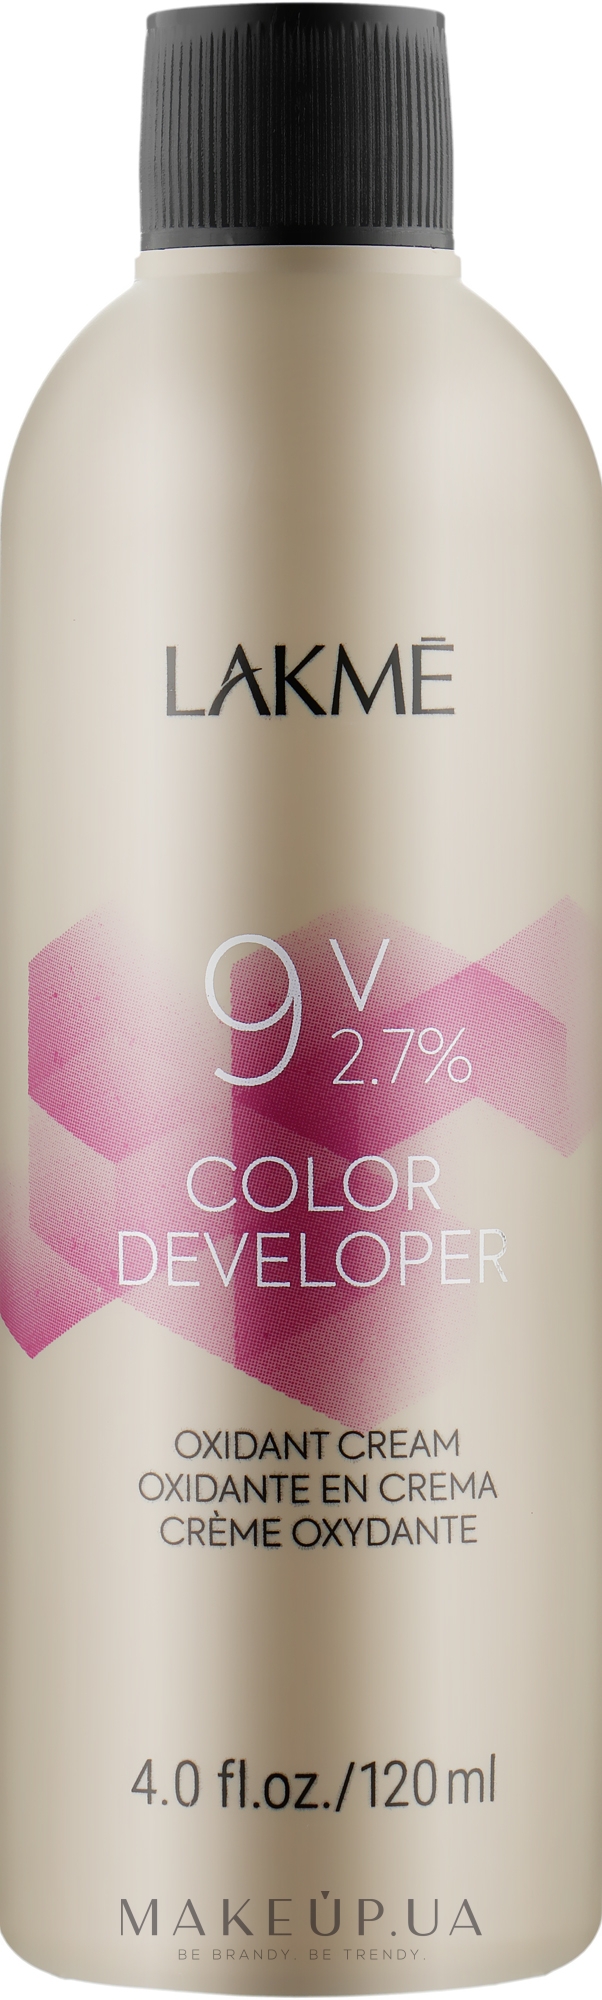 Крем-окислитель - Lakme Color Developer 9V (2,7%) — фото 120ml